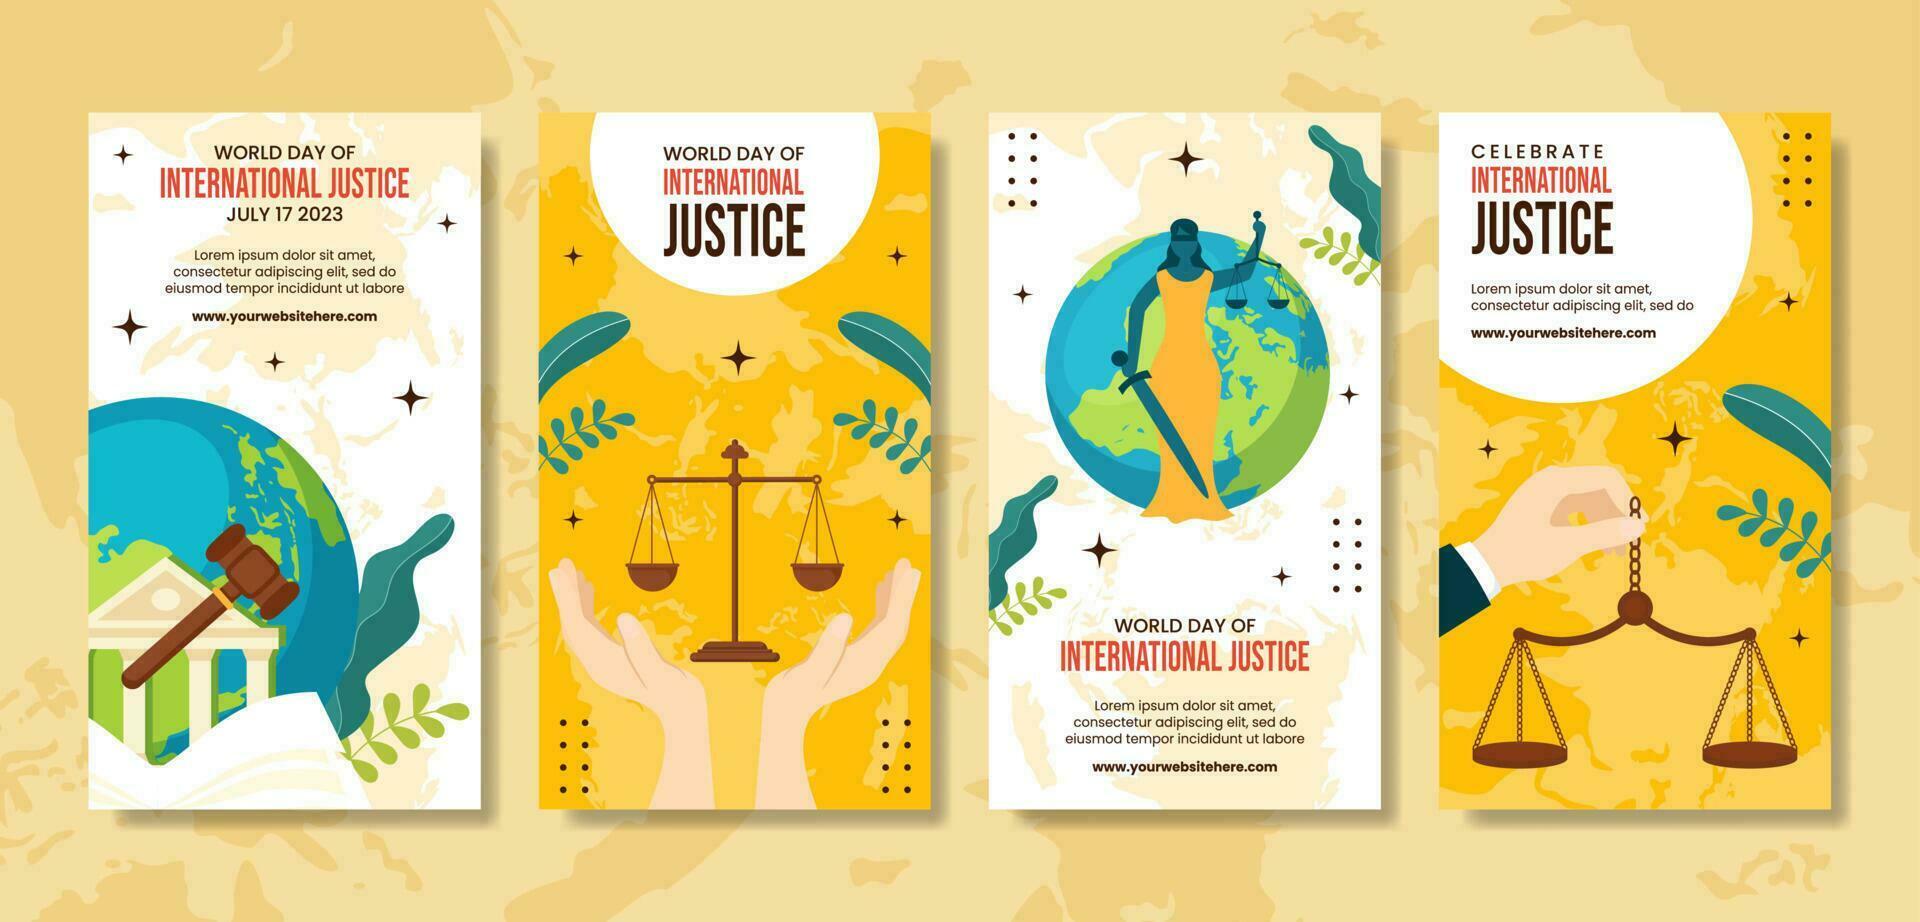 Welt Tag zum International Gerechtigkeit Sozial Medien Geschichten Illustration Karikatur Hand gezeichnet Vorlagen Hintergrund vektor